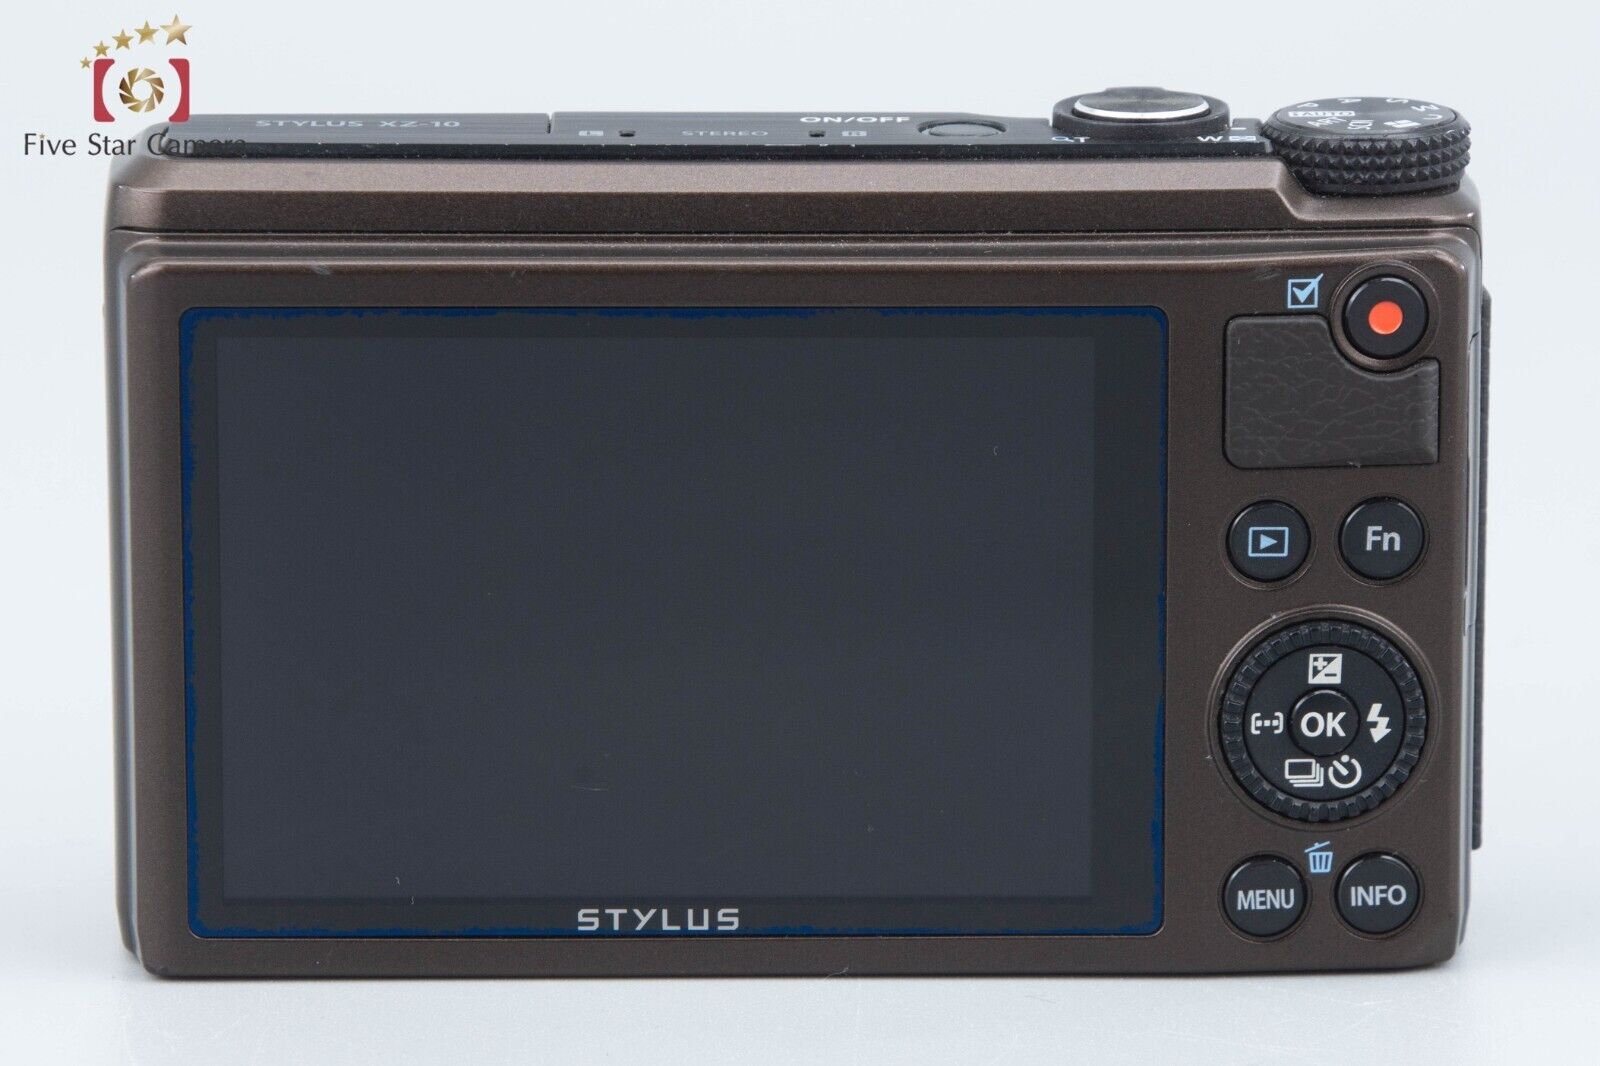 Olympus STYLUS XZ-10 Brown 12.0 MP Digital Camera